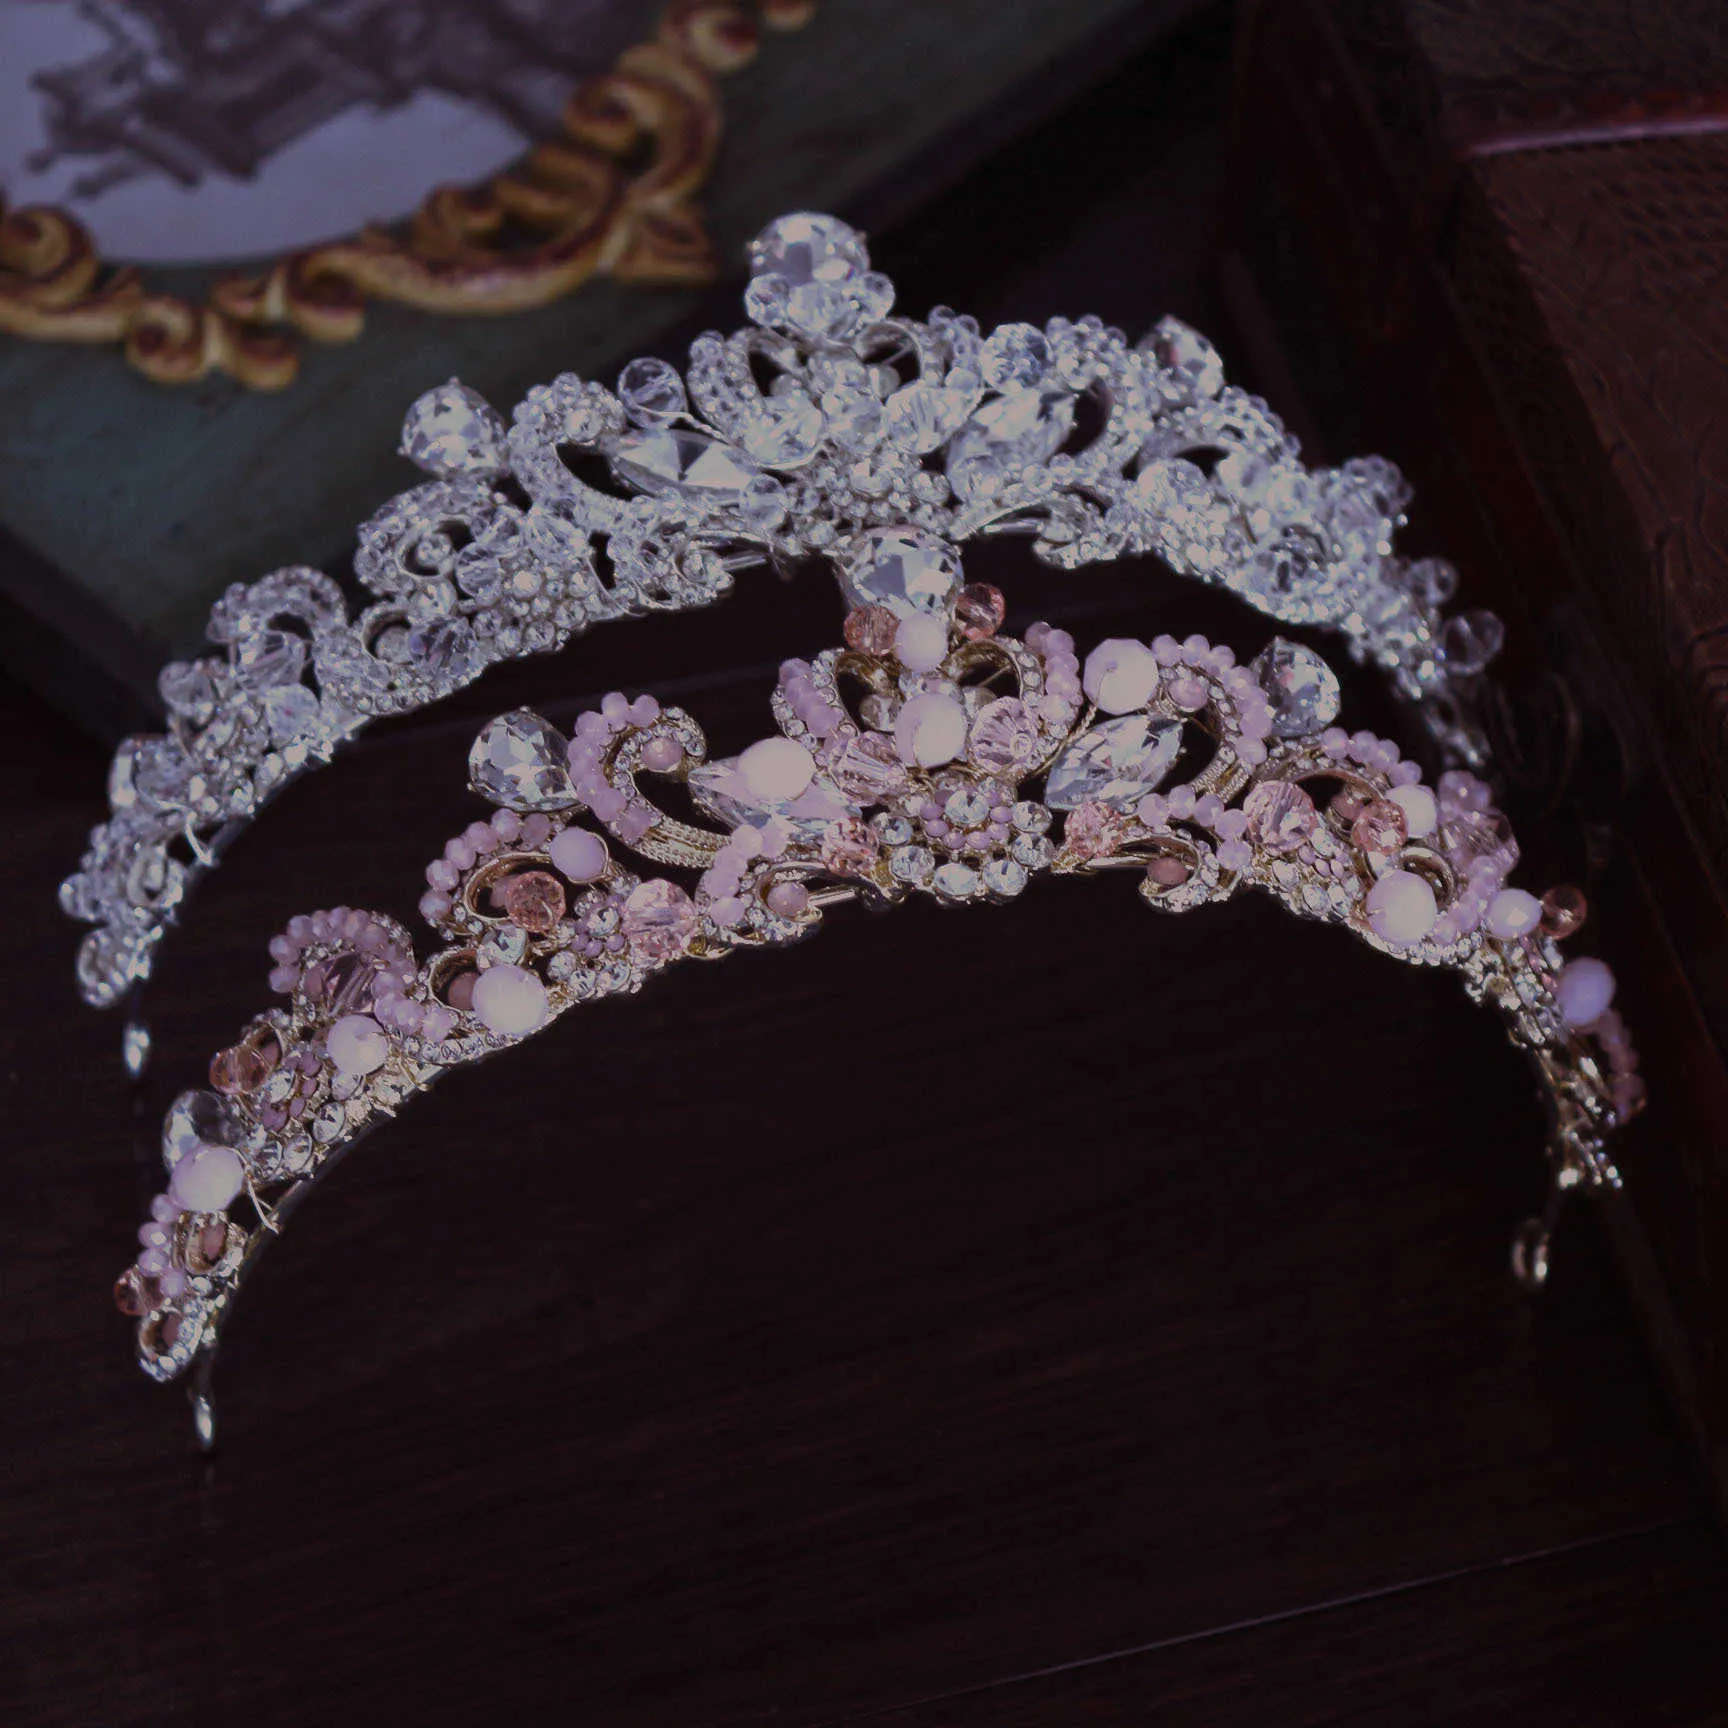 Doux rose cristal mariée casque chaîne mariage strass fleurs diadème couronne bandeau or demoiselle d'honneur cheveux bijoux H0827302m